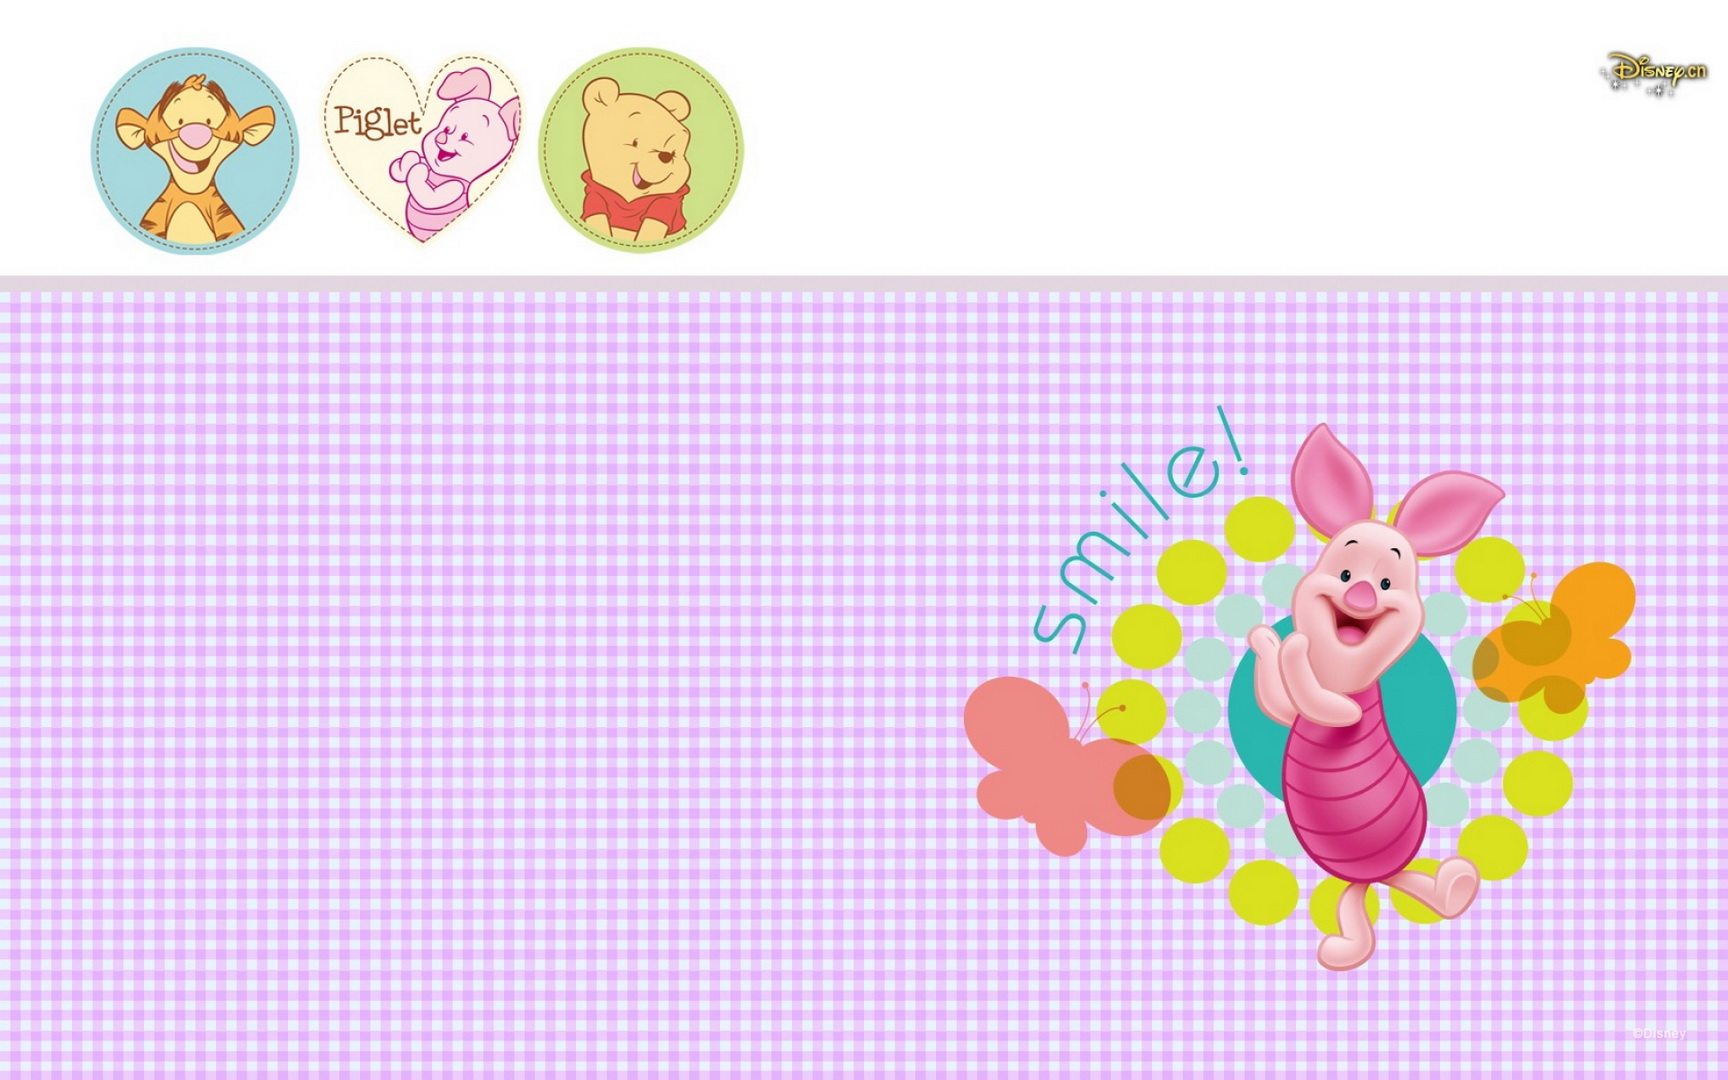 Wallpaperres.com | Piglet Character Disney Cartoon Wallpaper 04